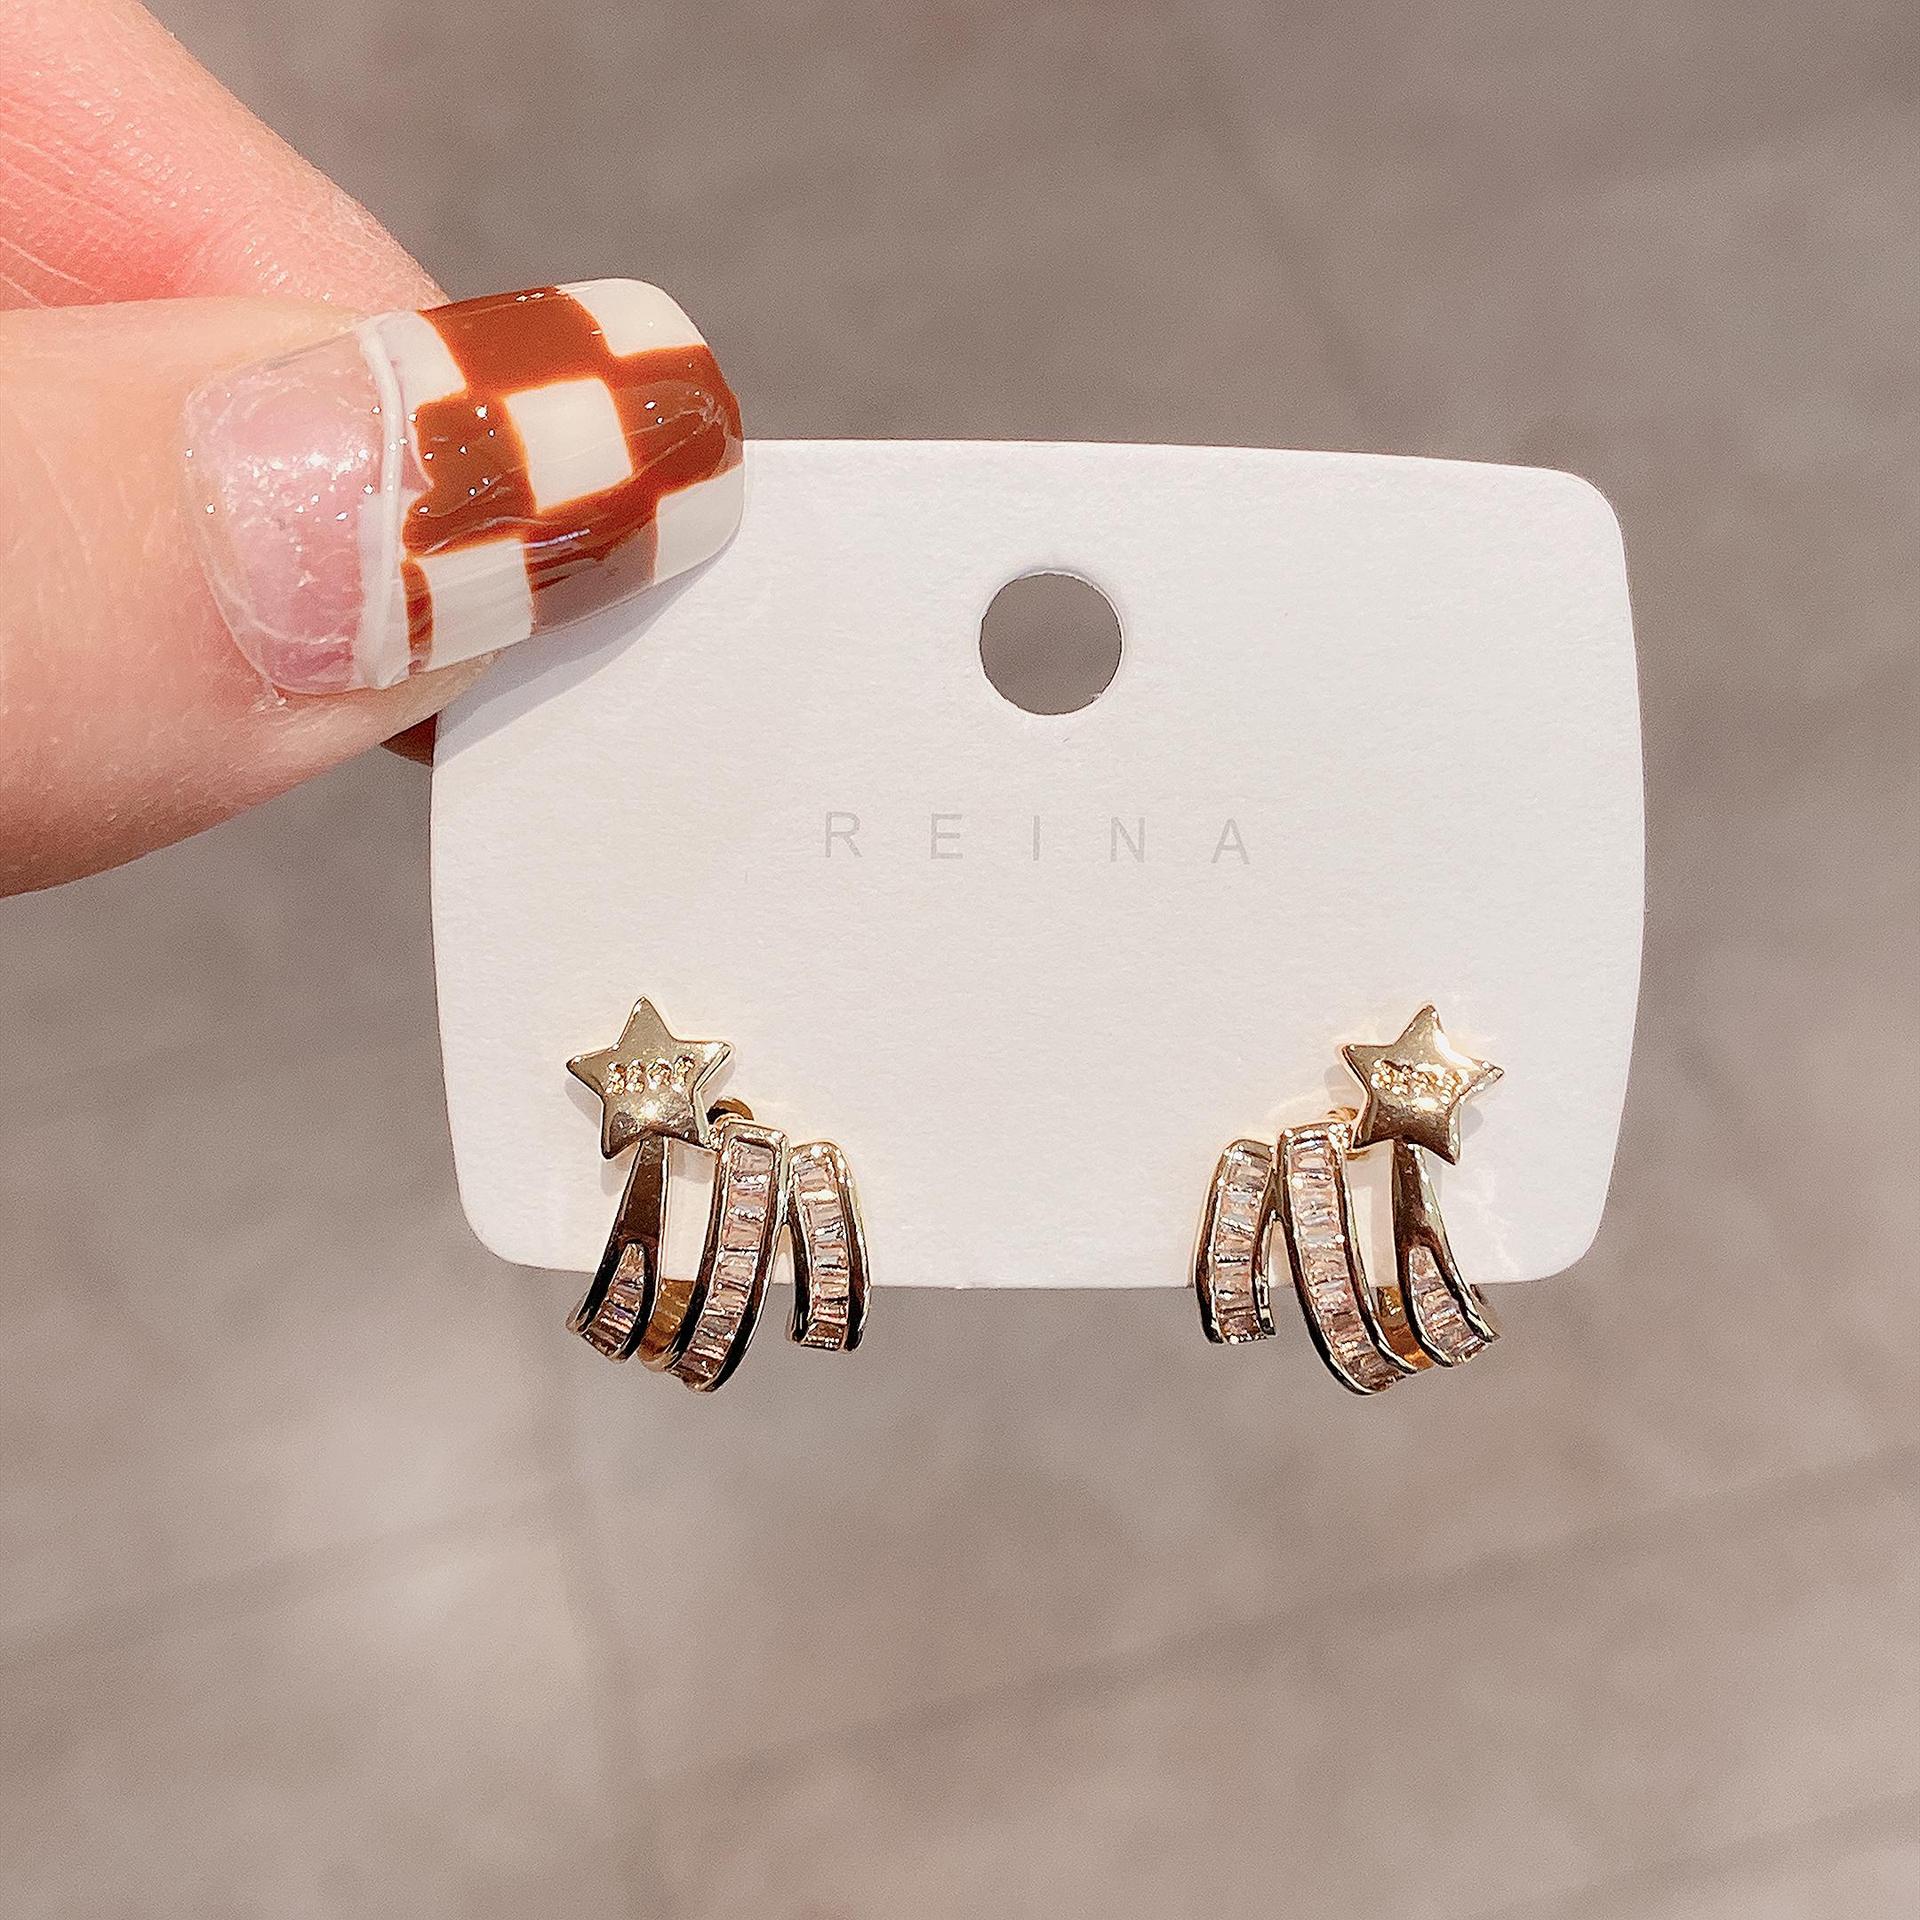 Personalized Minority Design Multi-Layer Zircon Stud Earrings for Women Metallic Trend All-Match Small Letter Earrings